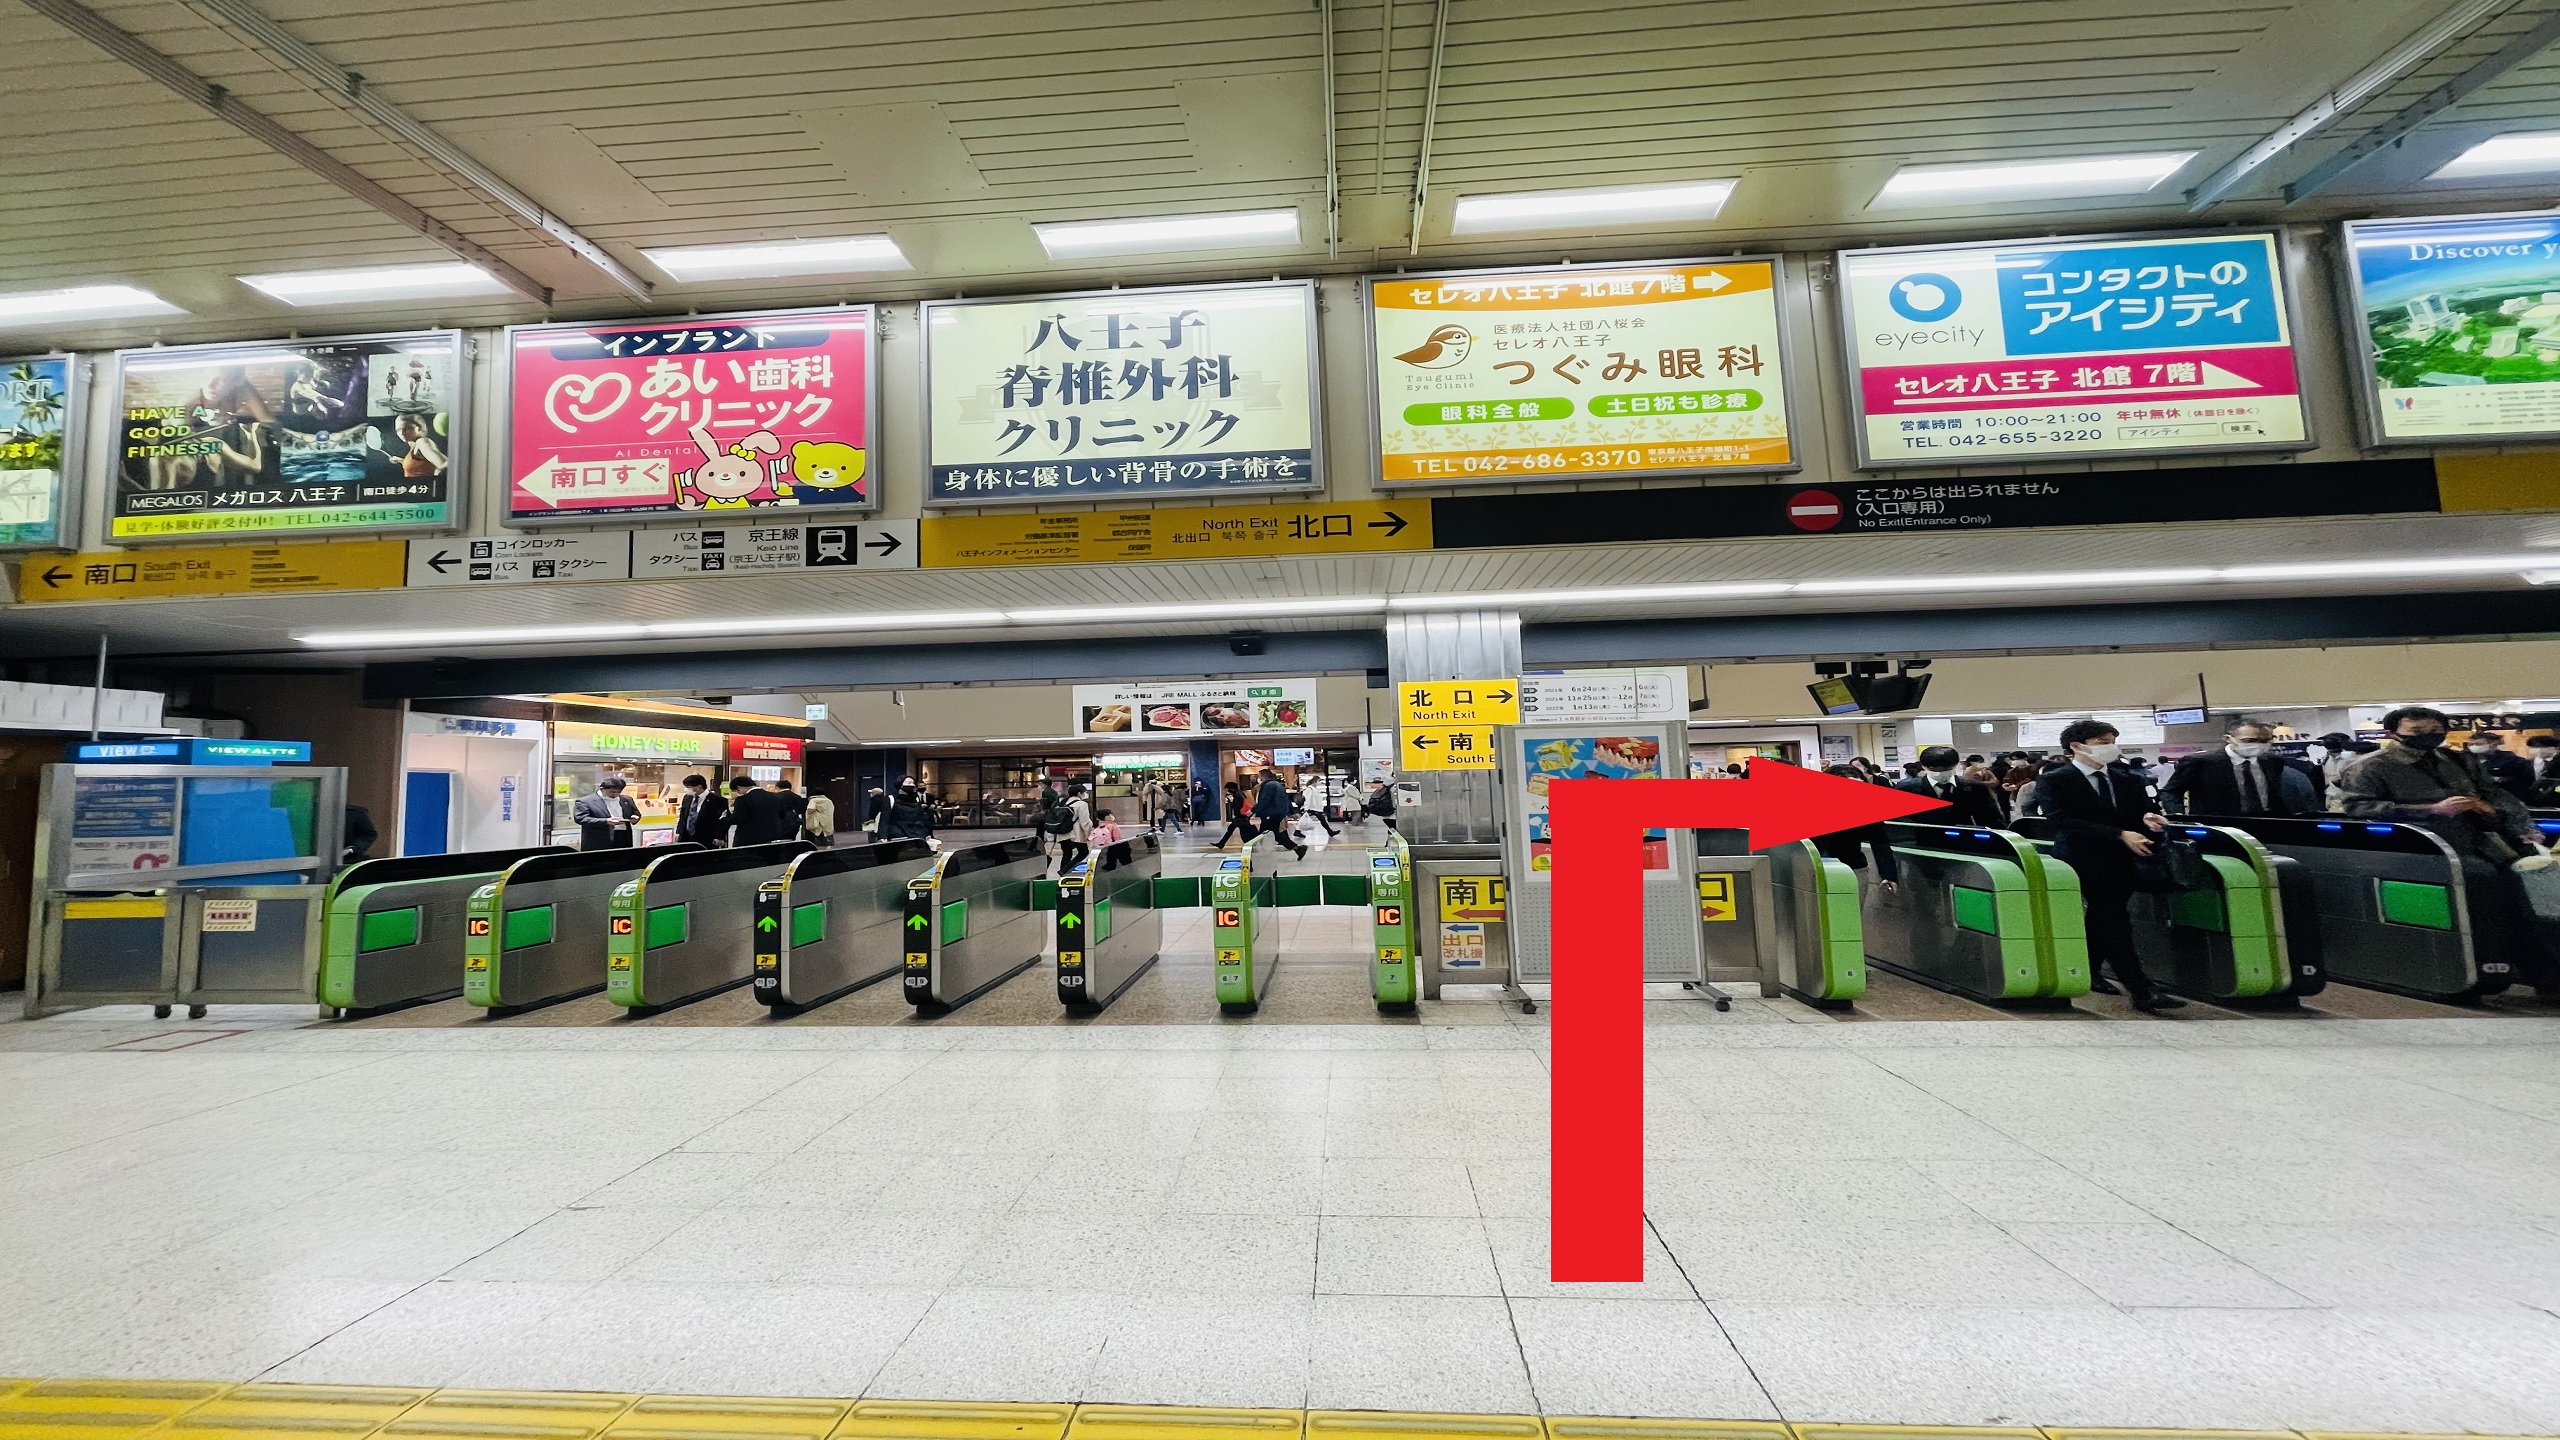 ①JR八王子駅改札口を出て、北口に進むとエスカレーターが見えます。